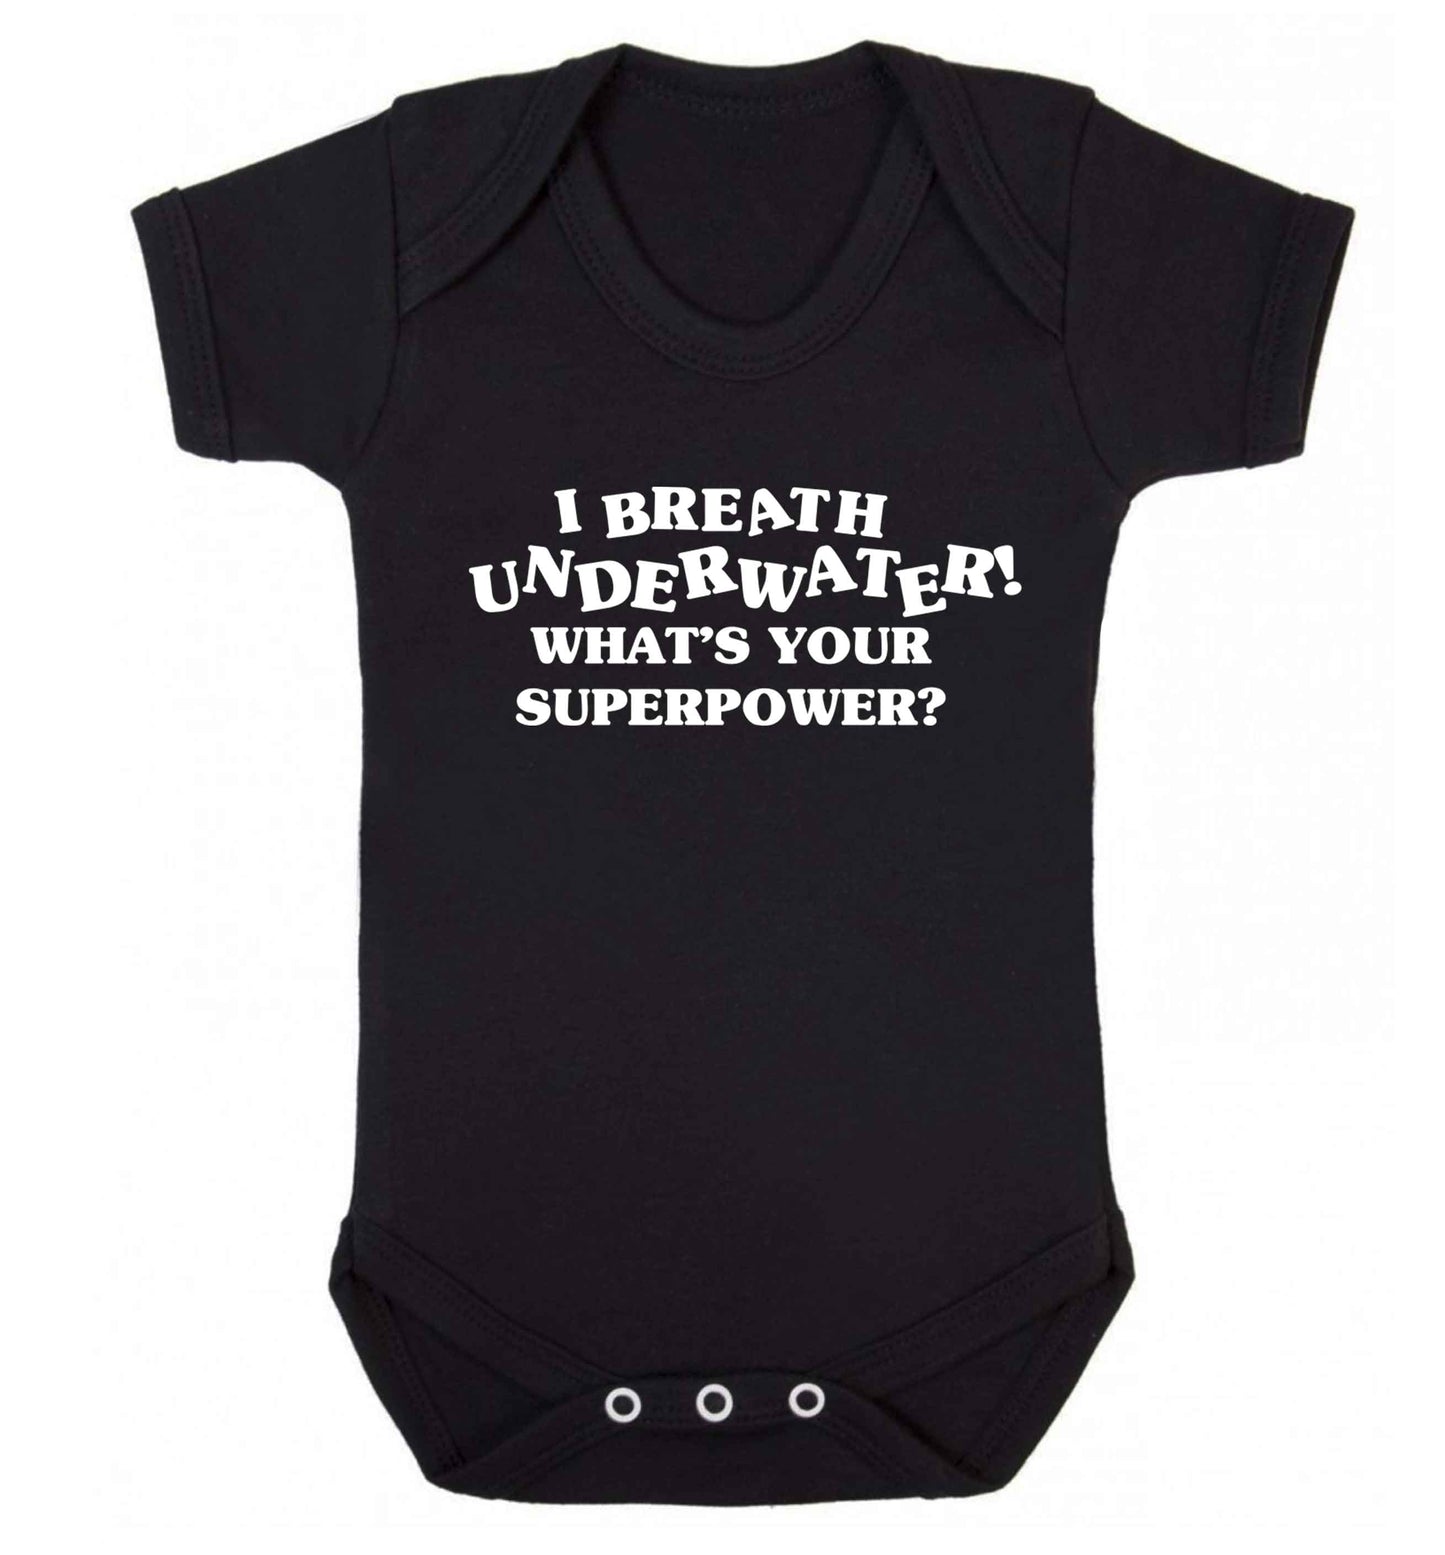 I breath underwater what's your superpower? Baby Vest black 18-24 months